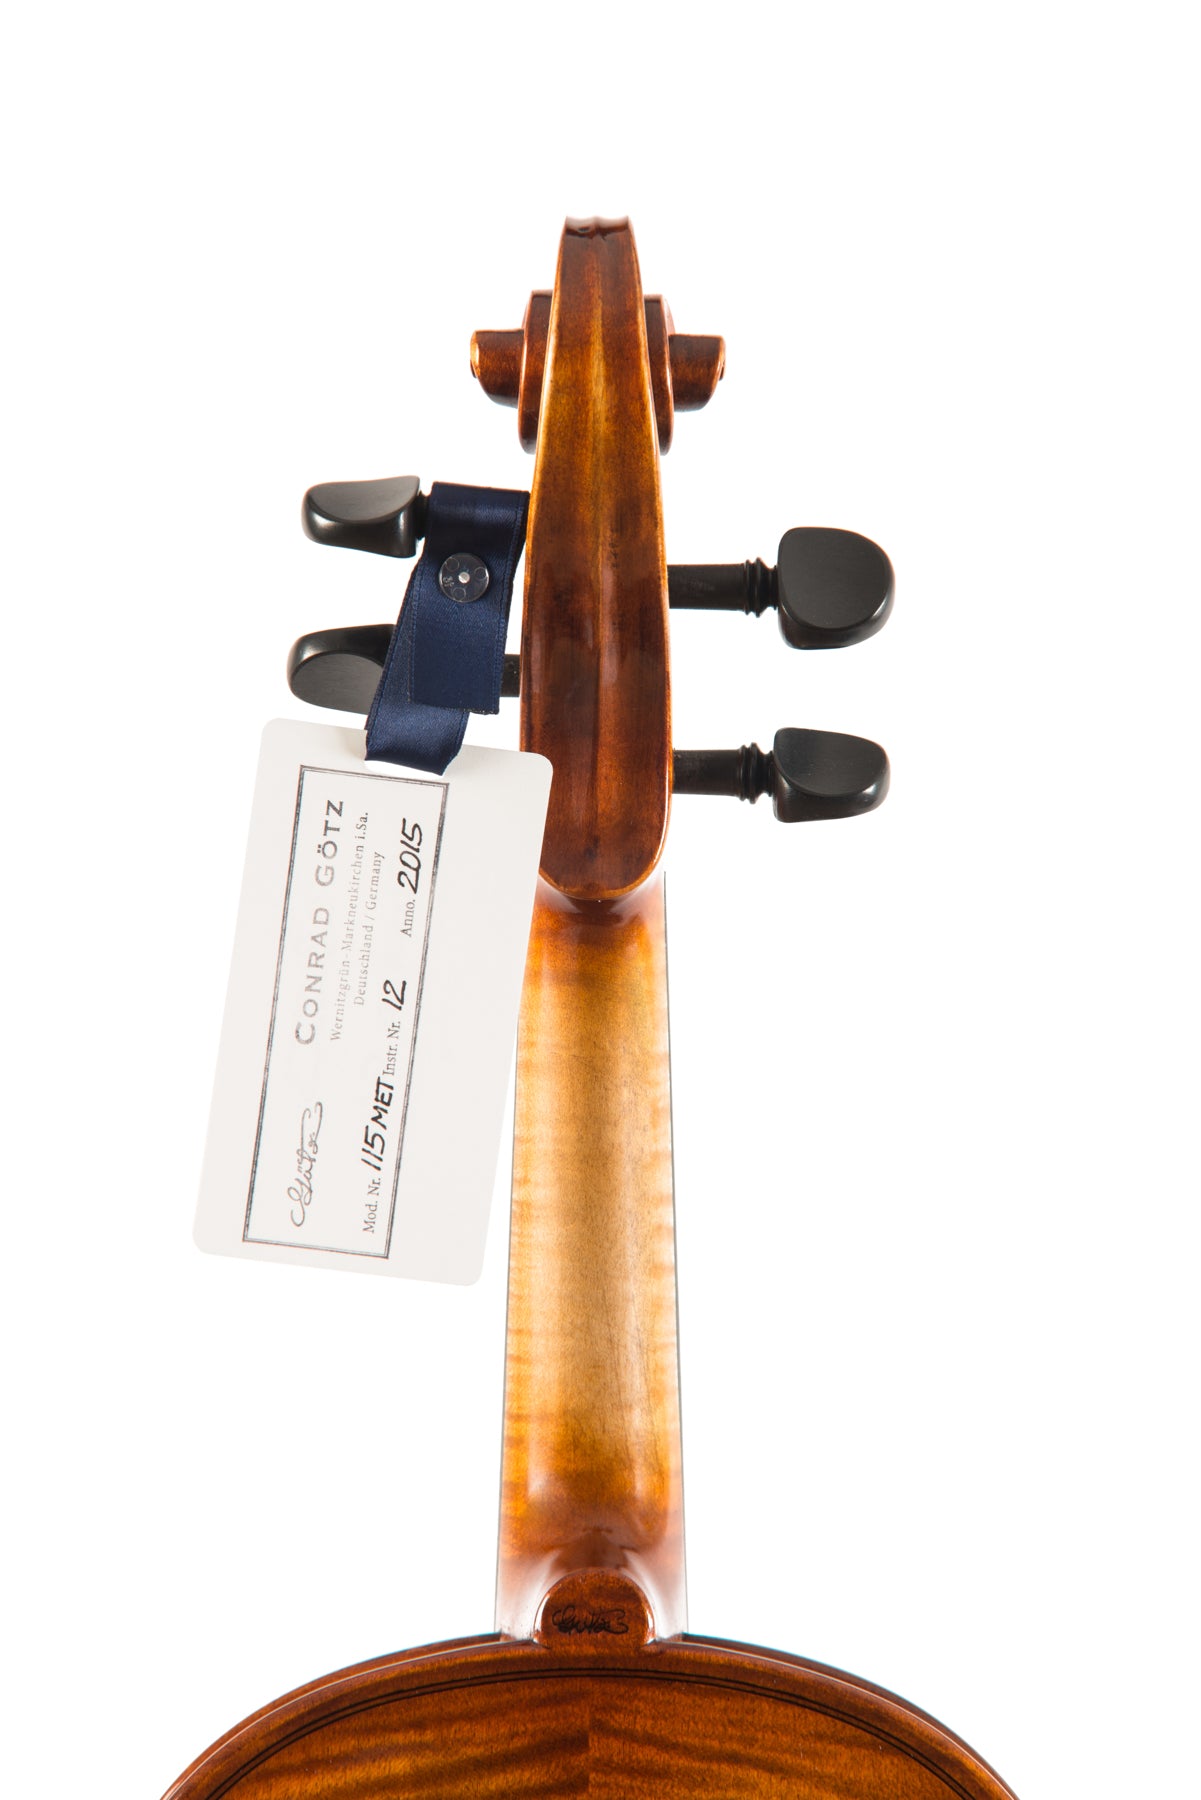 METROPOL Violin #115 MET 